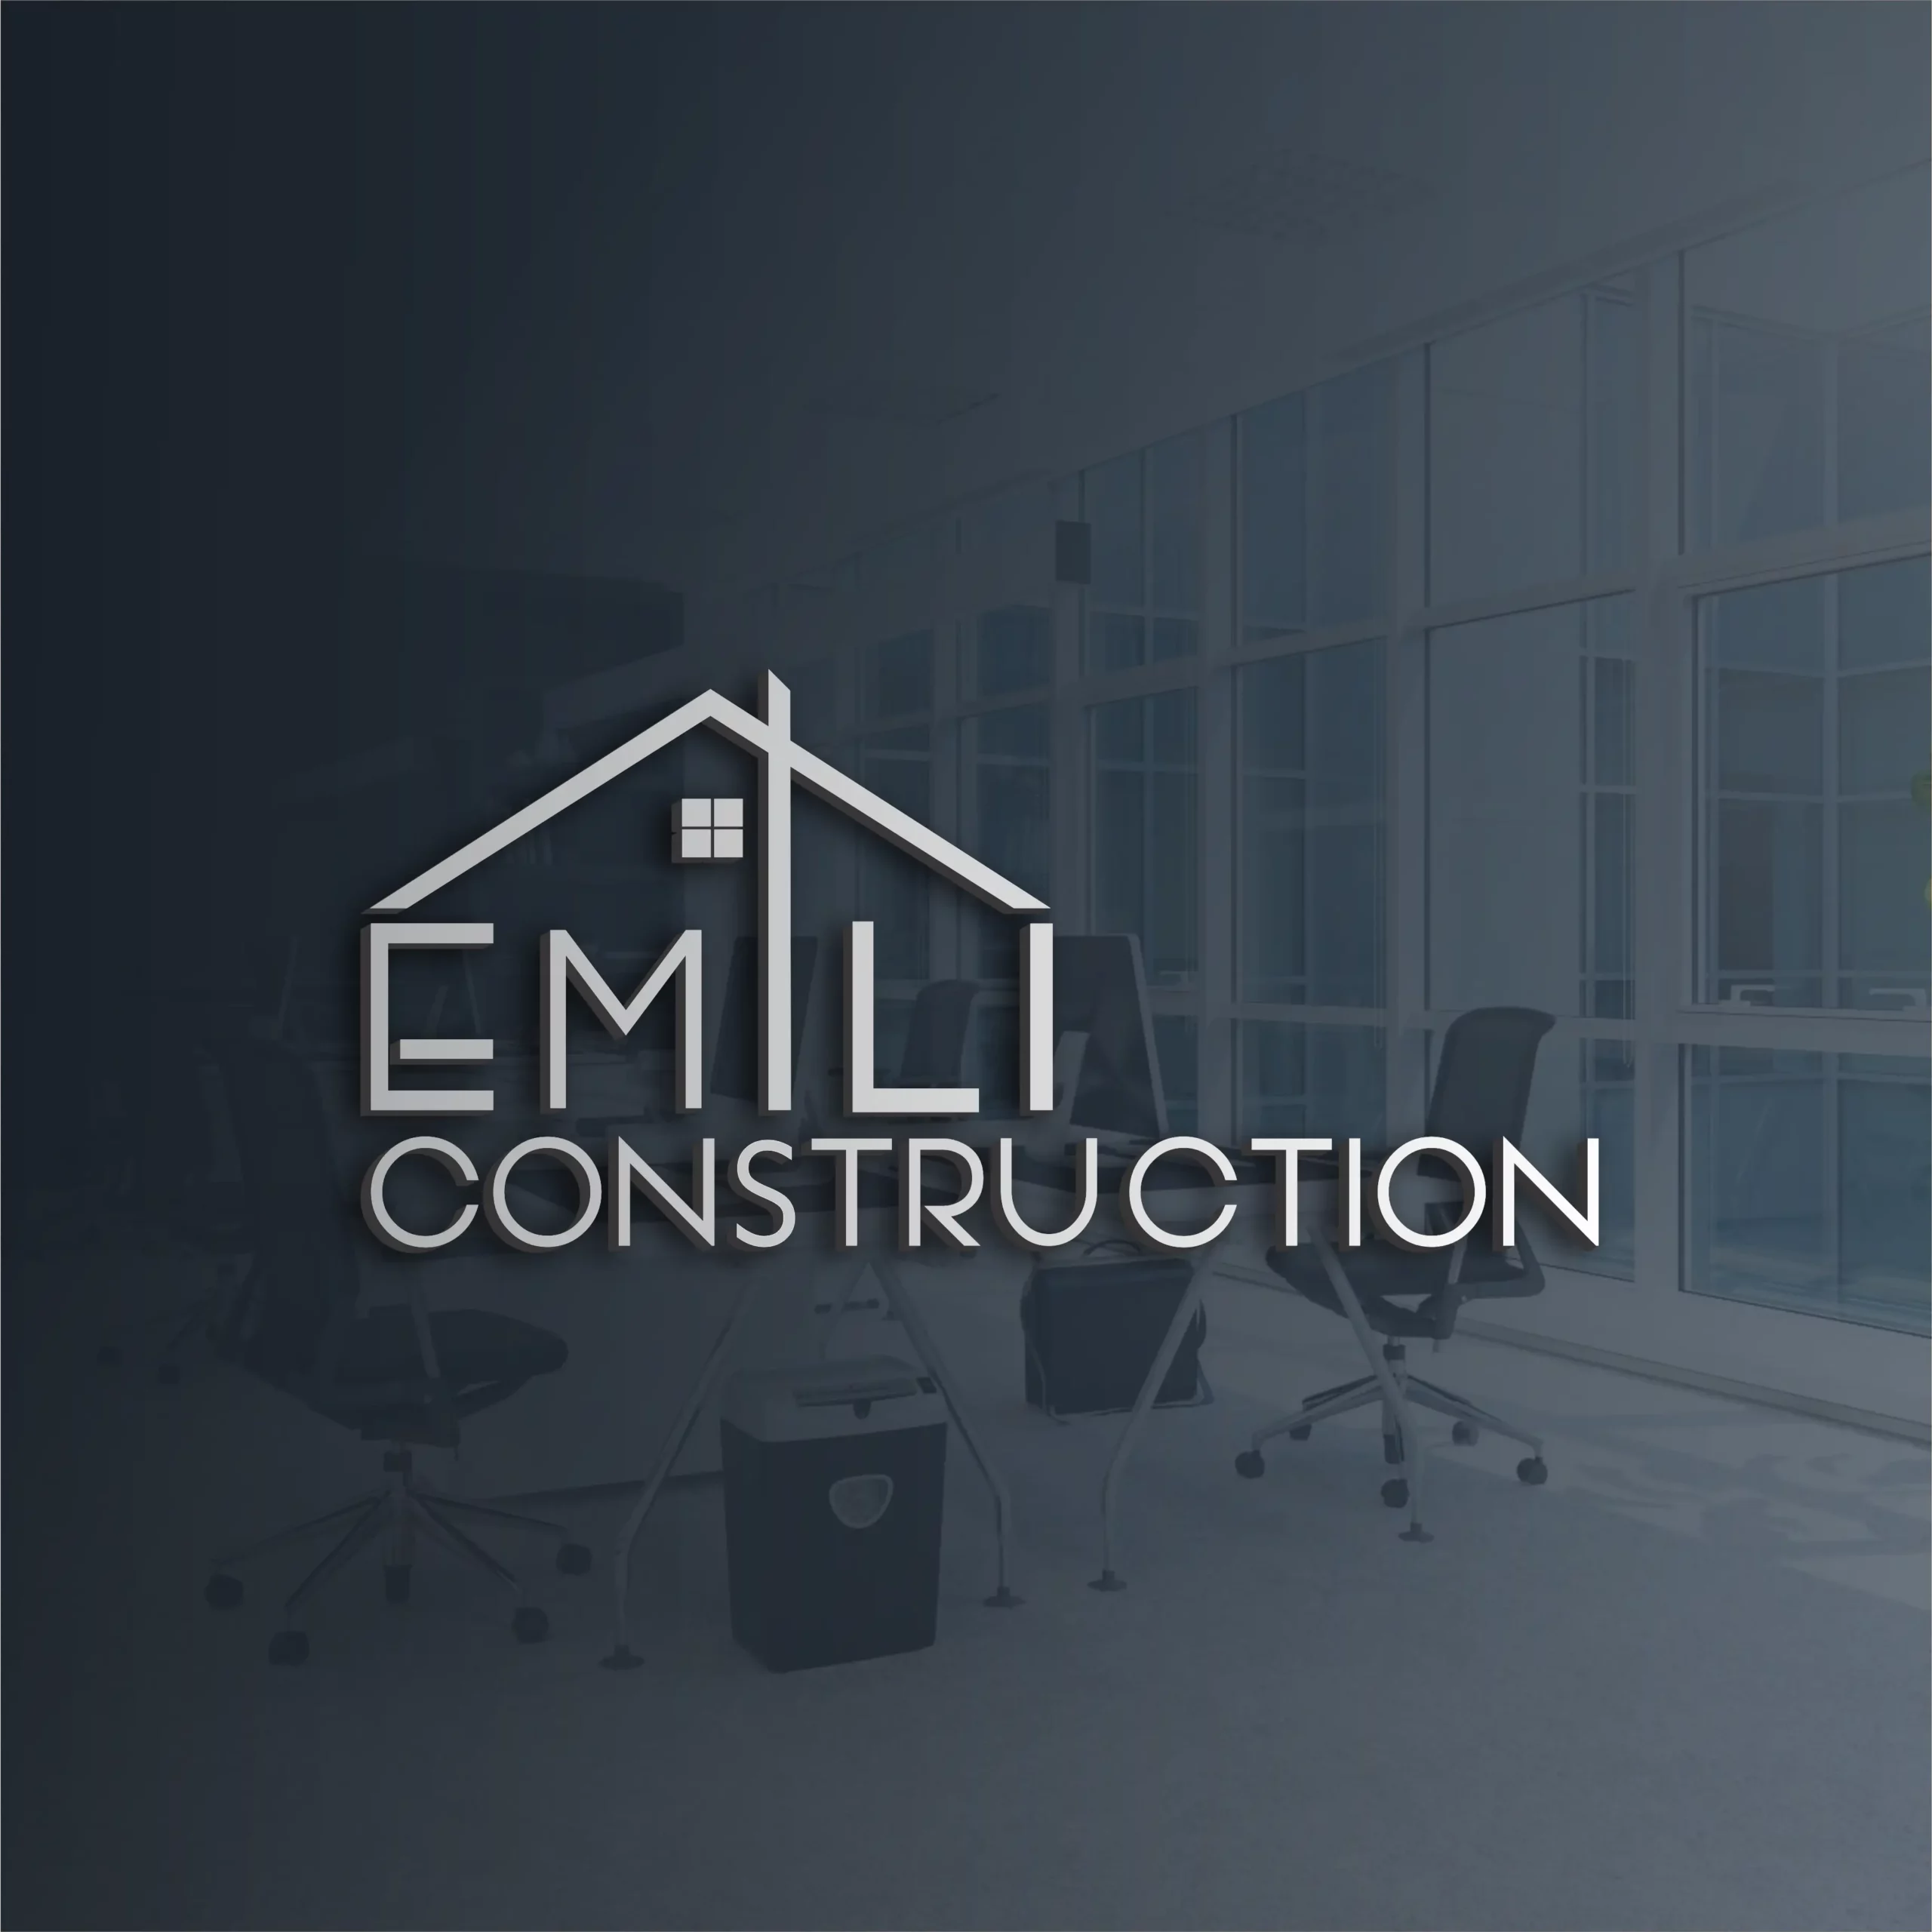 EMILI CONSTRUCTION